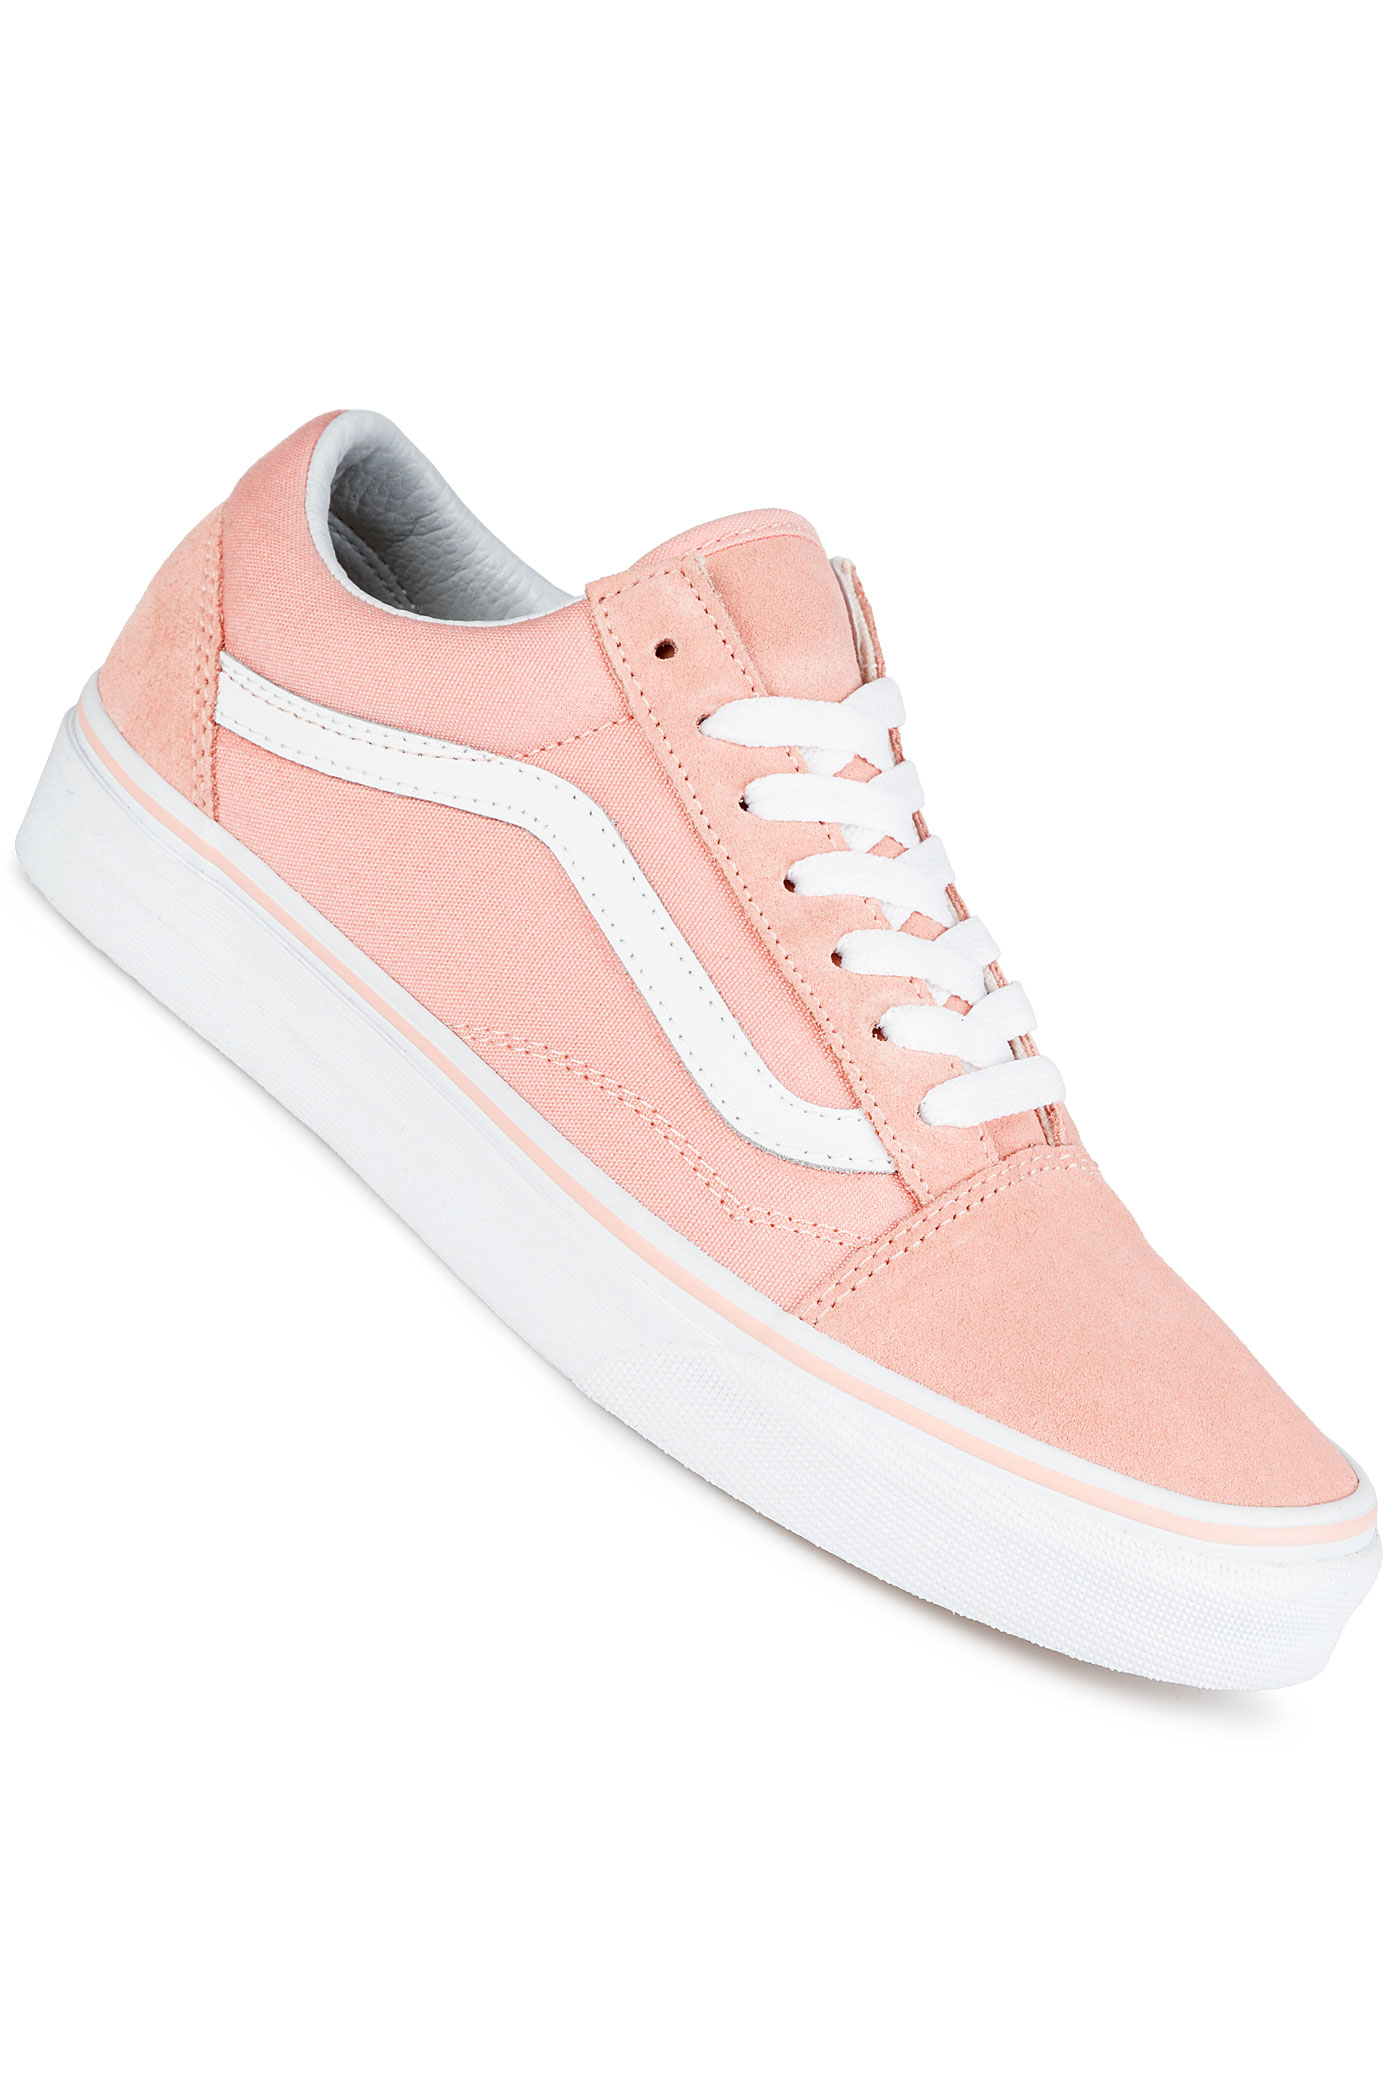 vans peach shoes